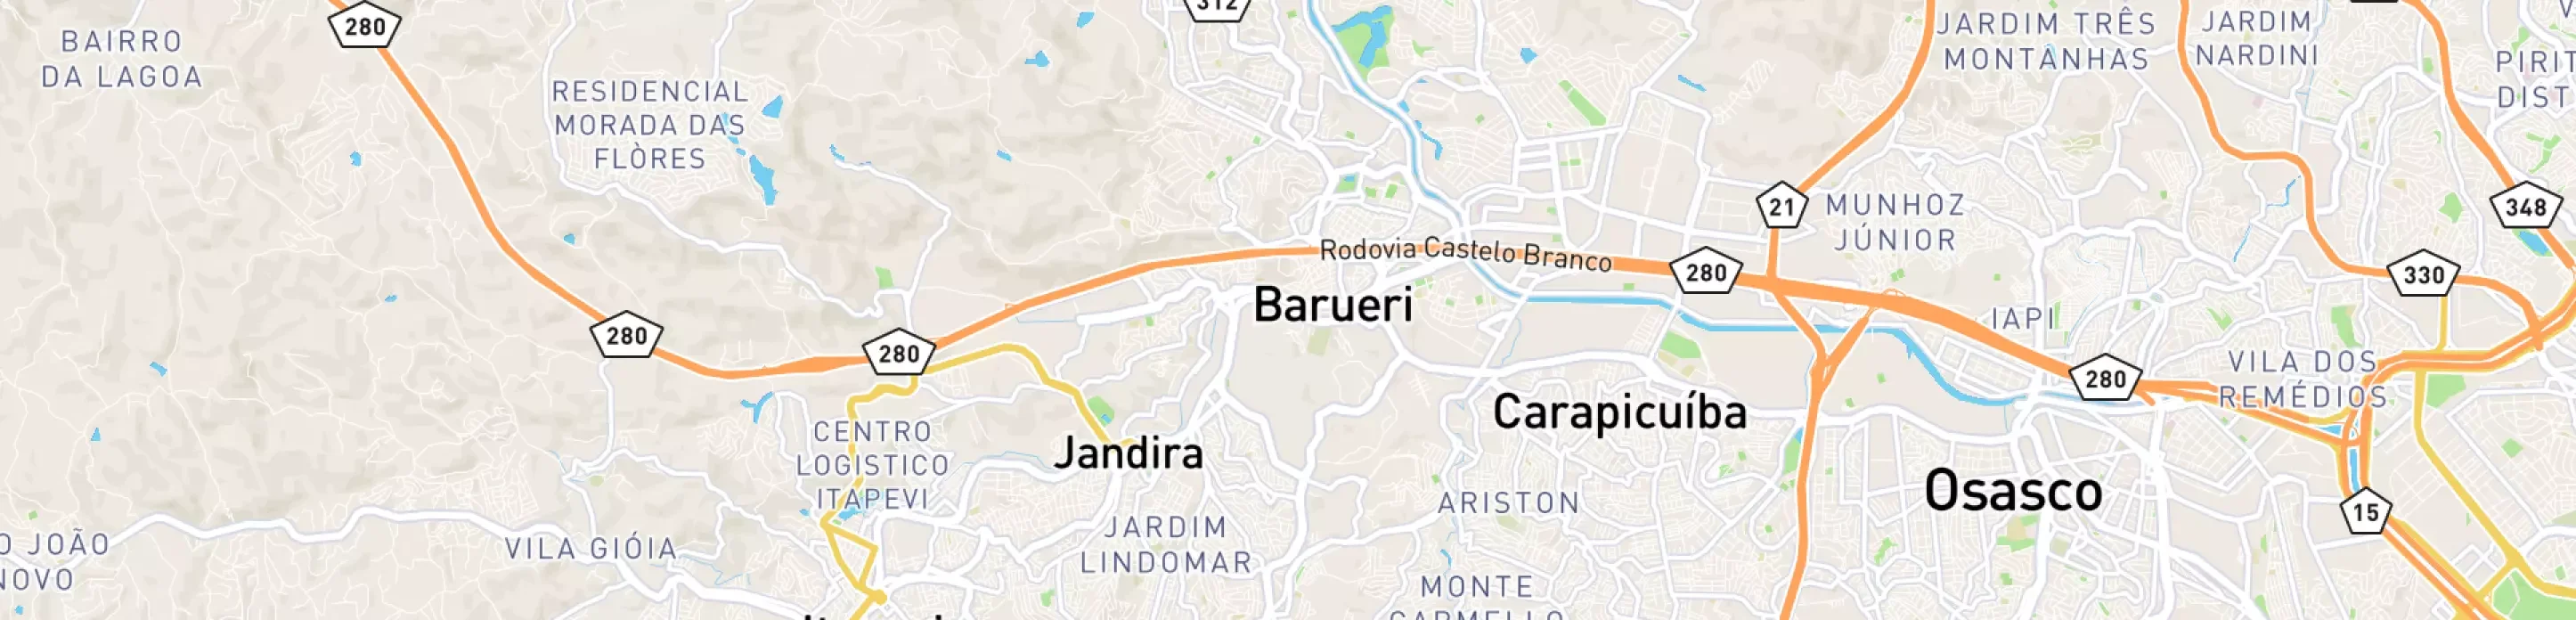 Mapa mostrando localização do terminal logístico de Barueri, da Petrobras.